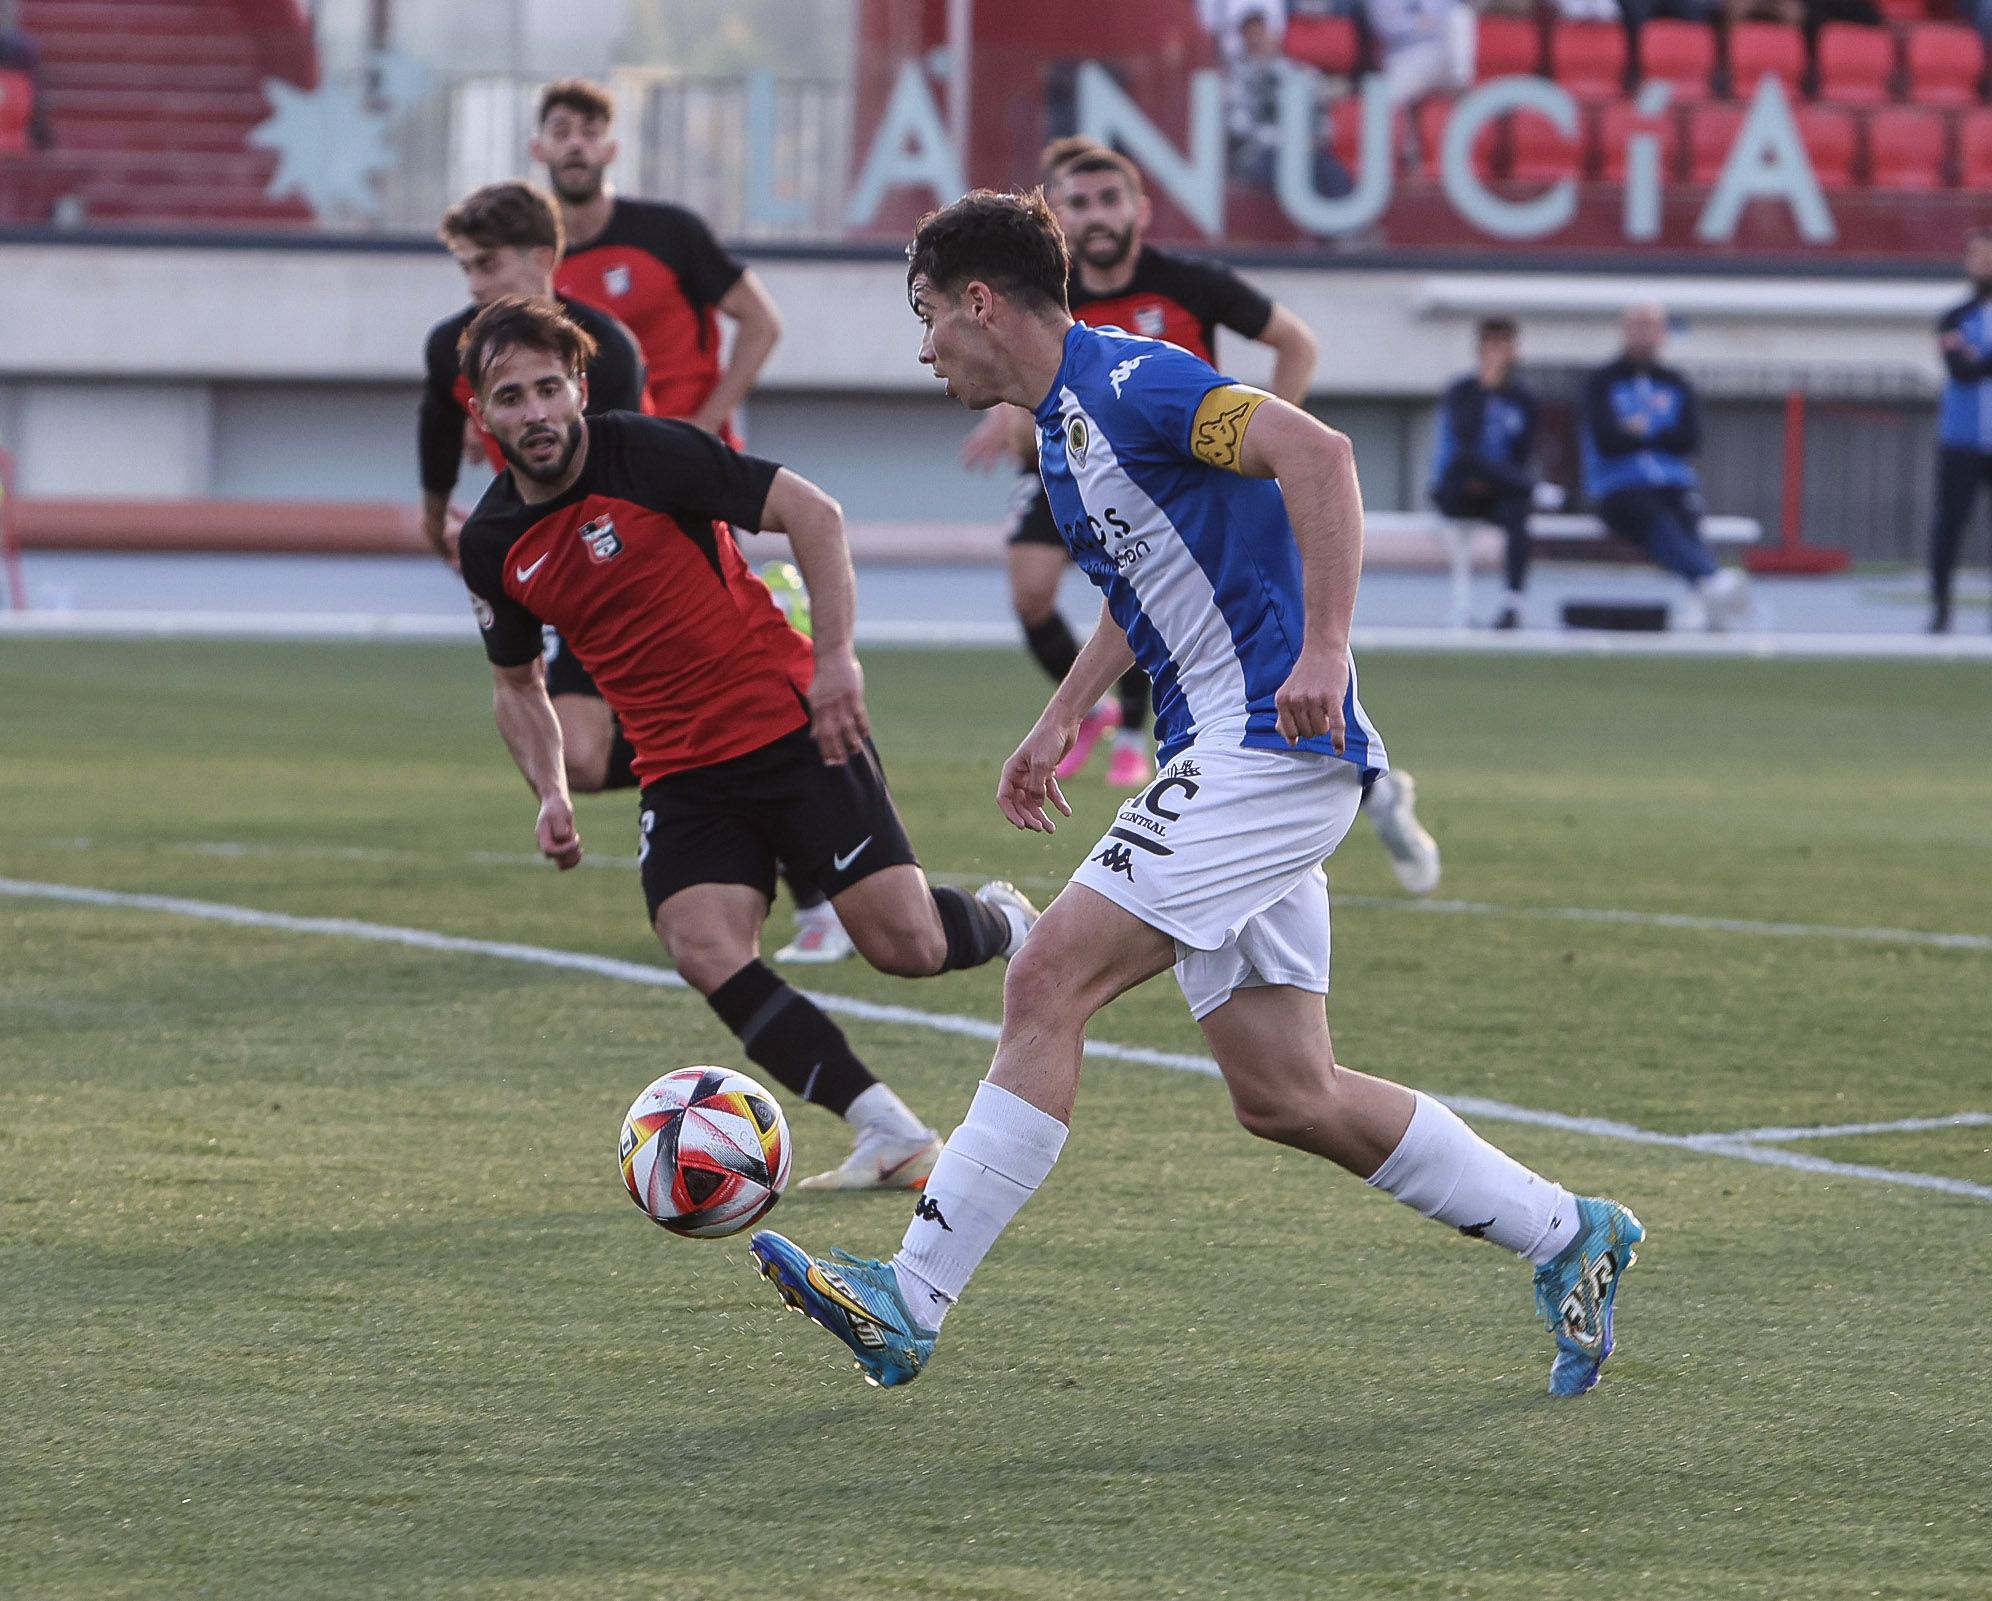 CF La Nucia - Hérccules CF  ( 0 - 0 )